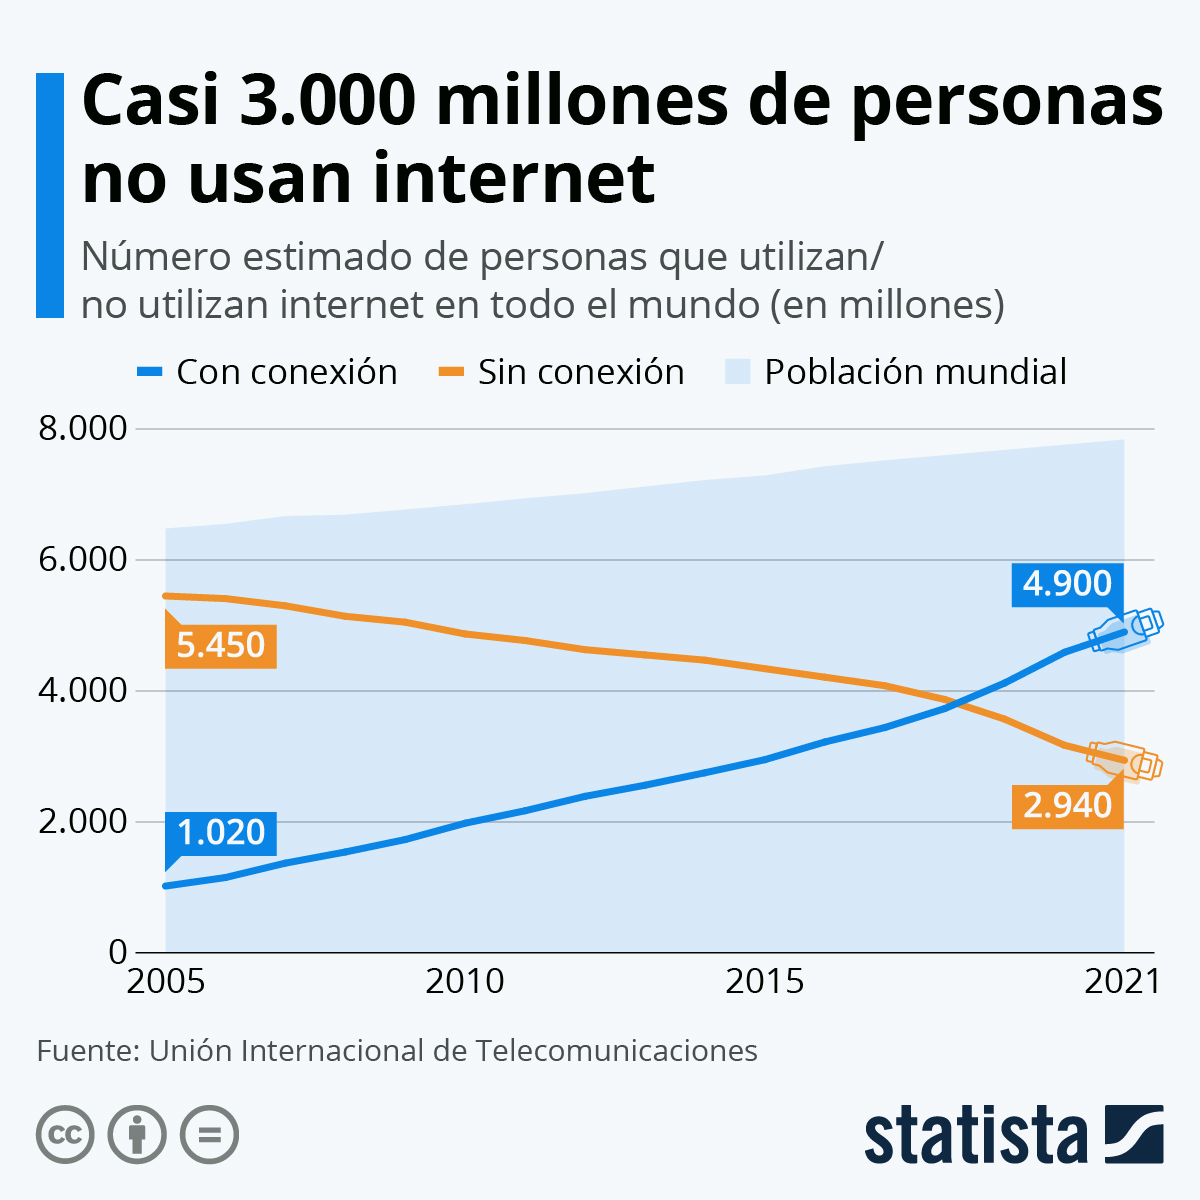 Datos | Casi 3.000 millones de personas no tienen acceso a internet